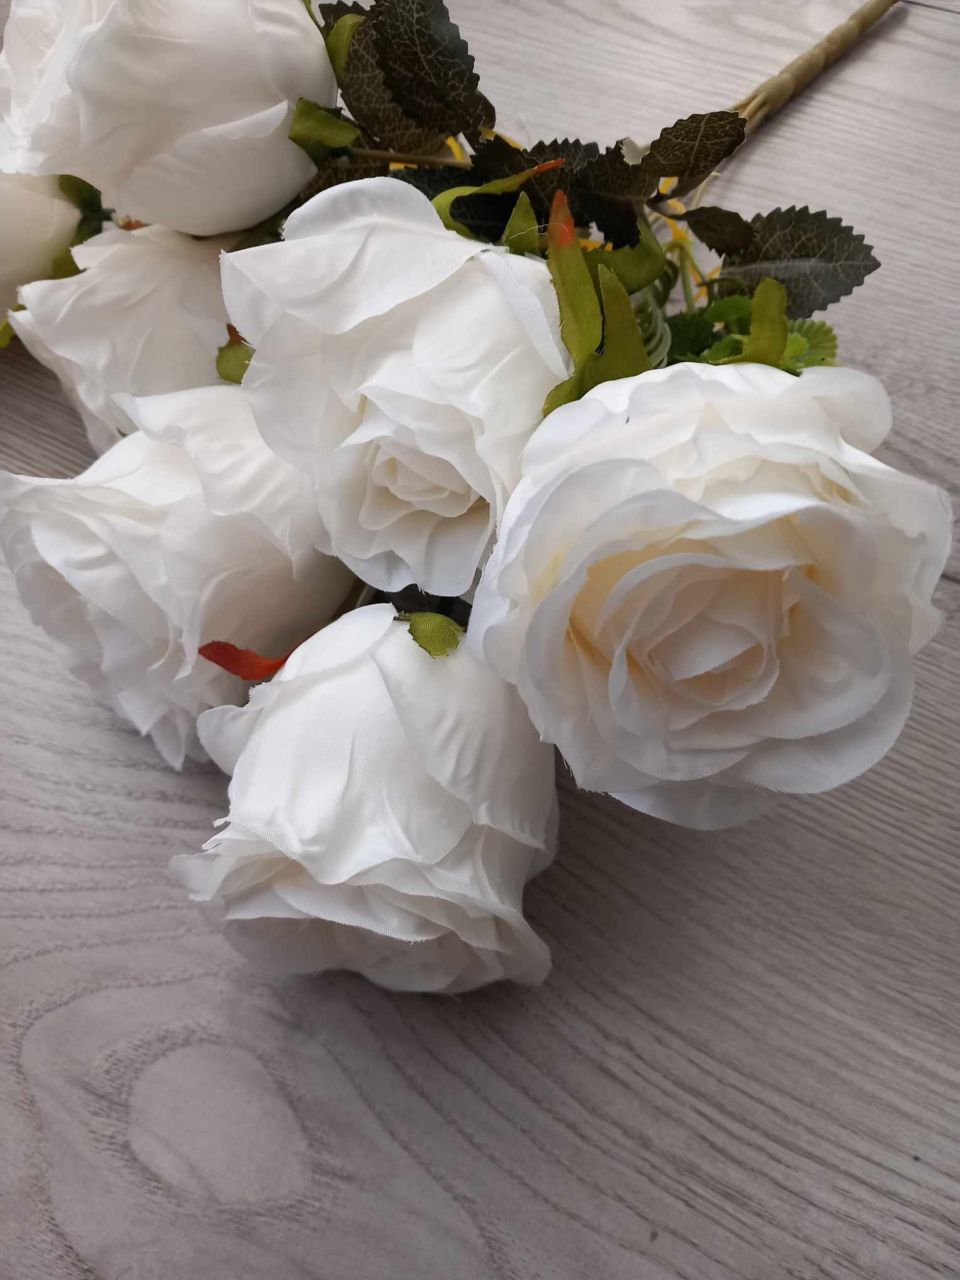 Fehér rózsa csokor x 7 50 cm - Fehér